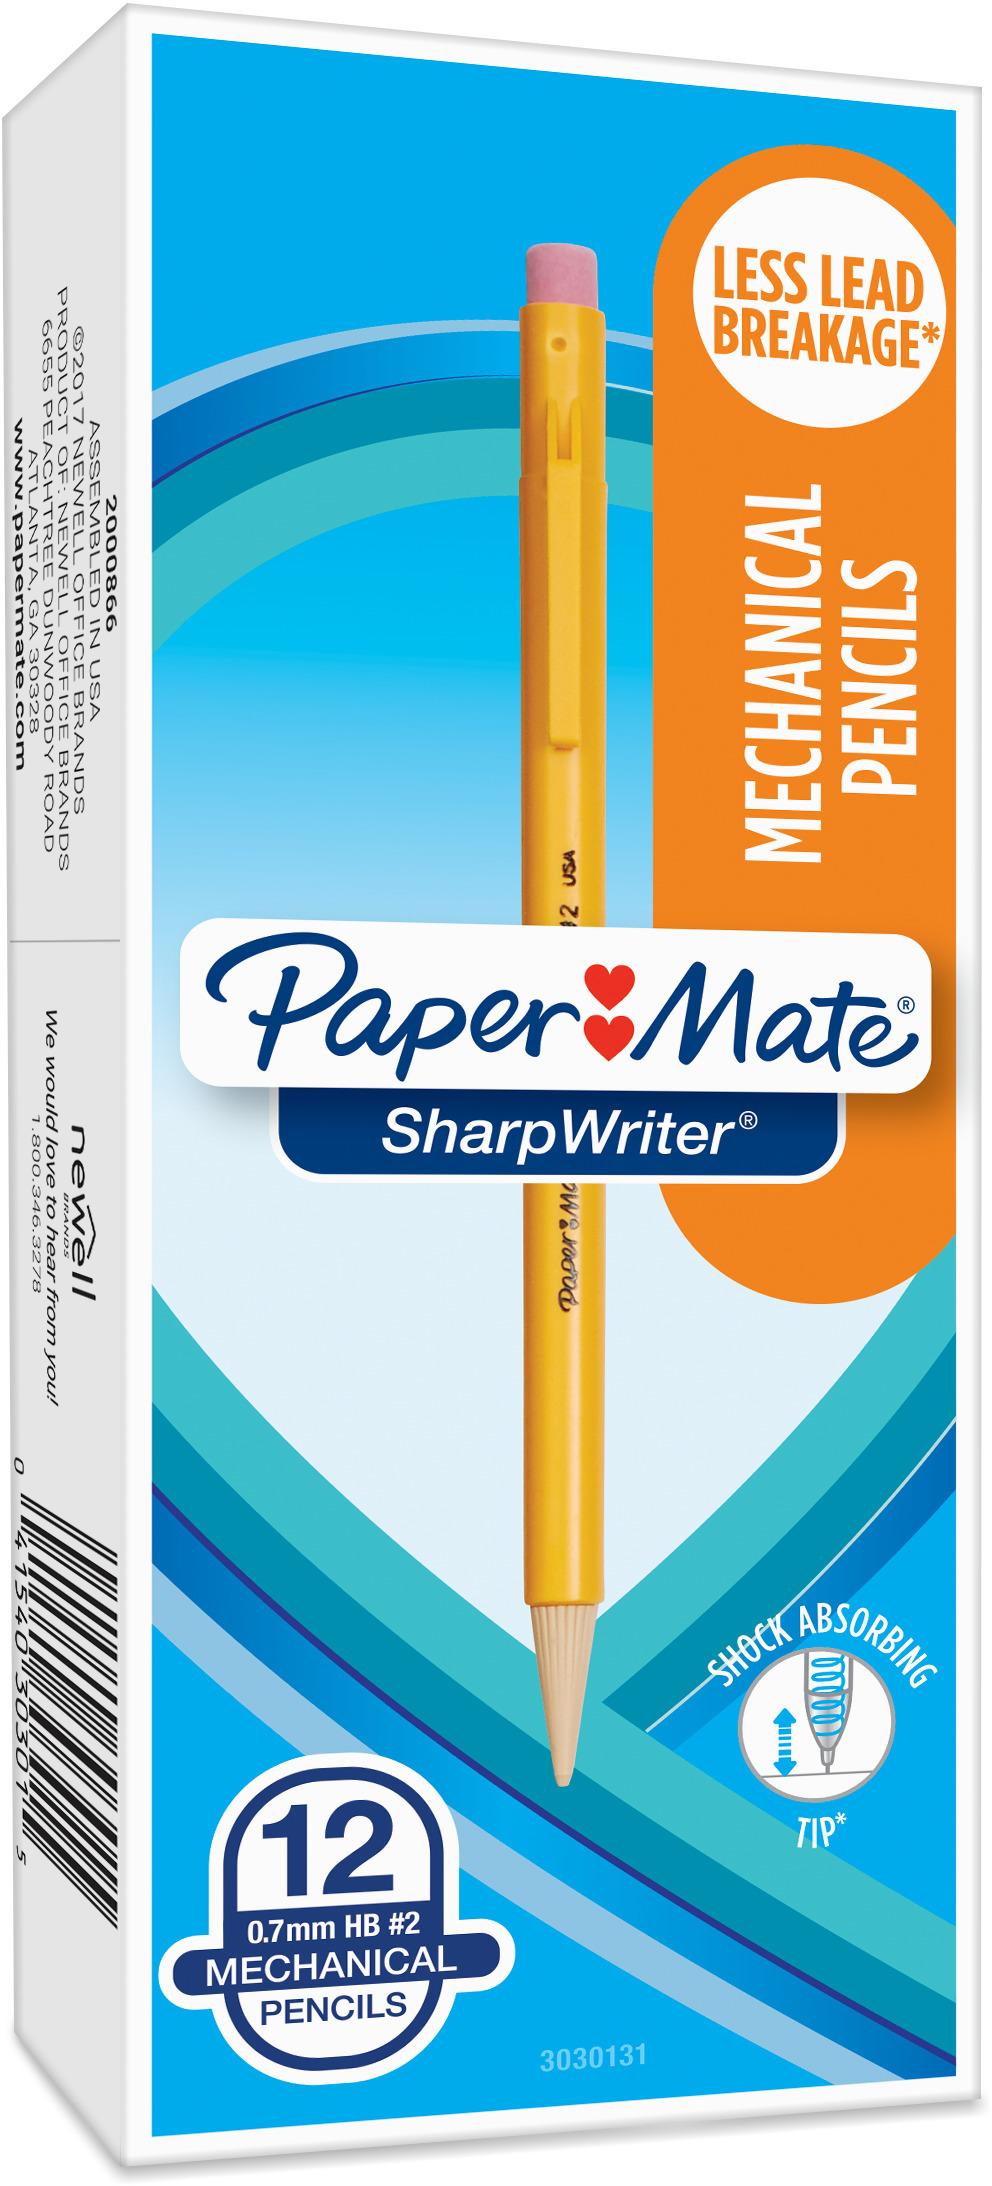  Paper Mate SharpWriter Mechanical Pencils 